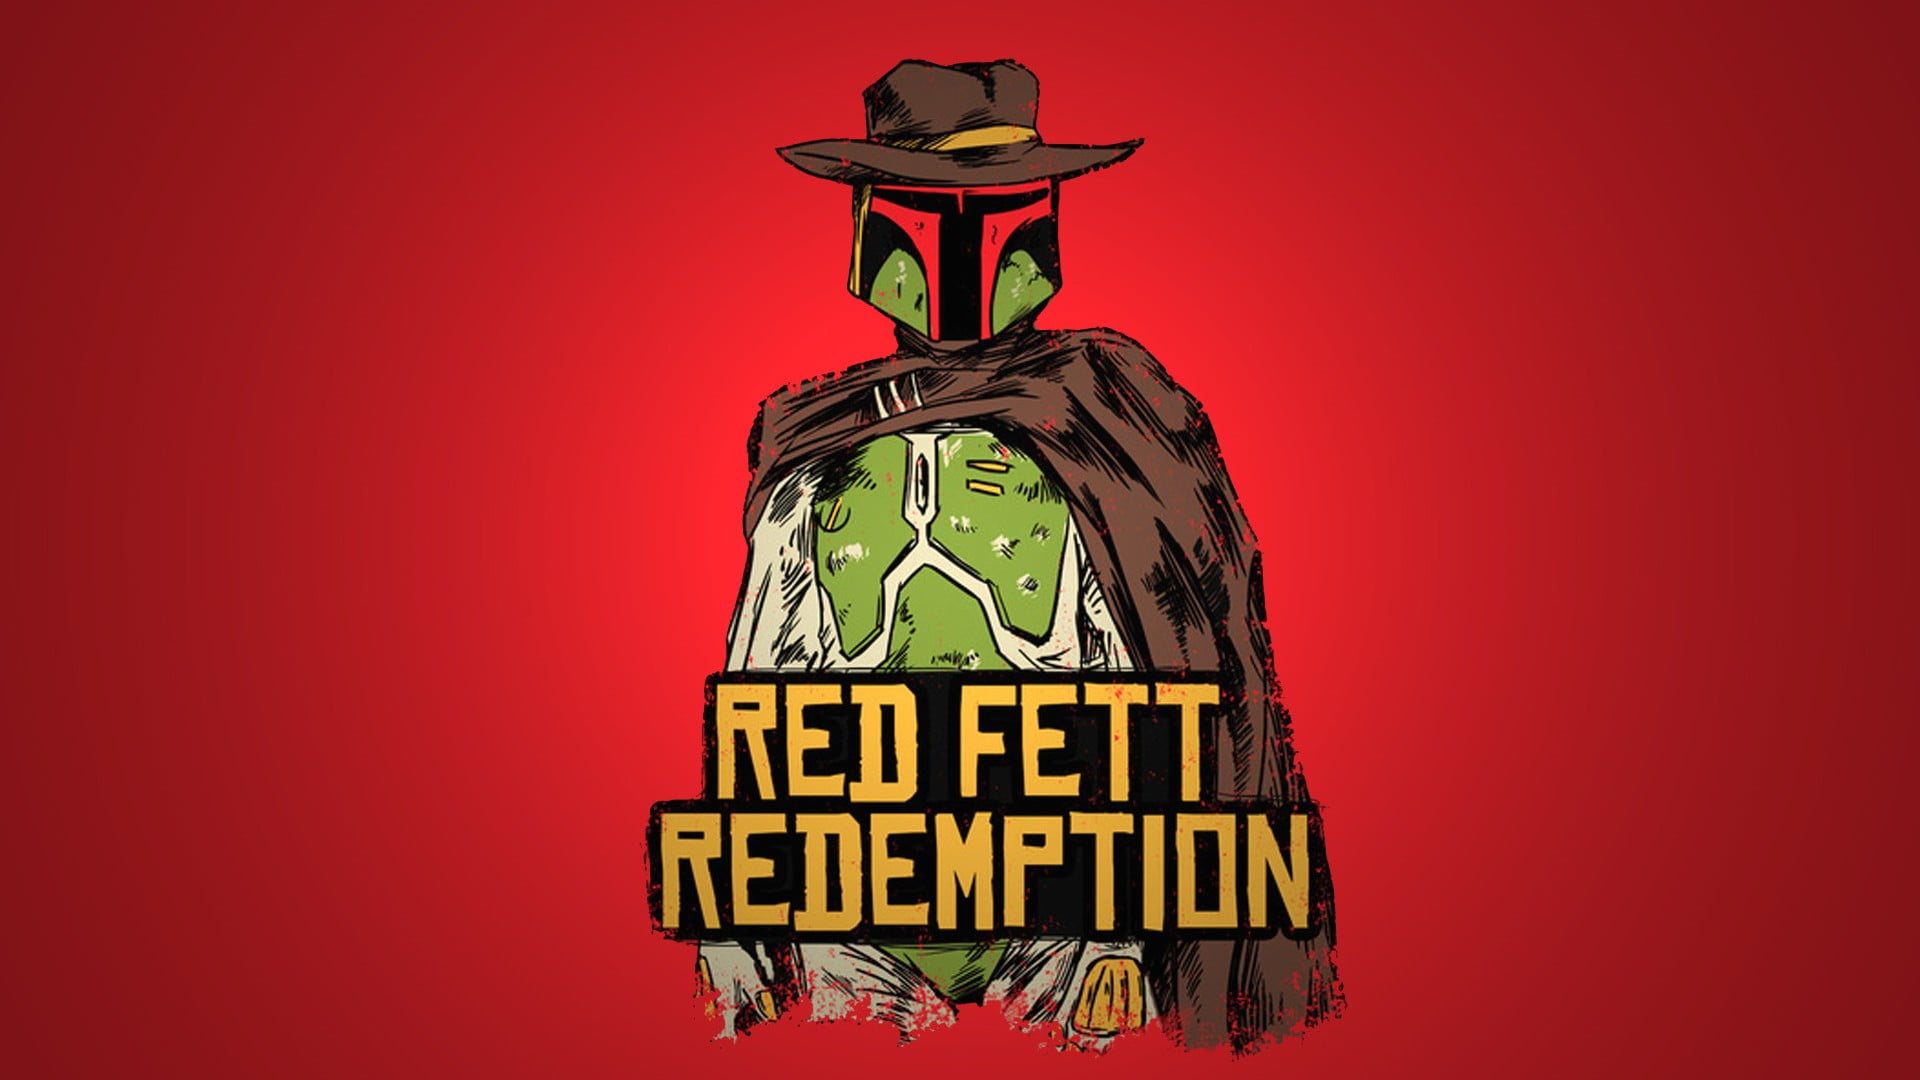 Red Fett Redemption Digital Wallpaper Star Wars Boba Fett